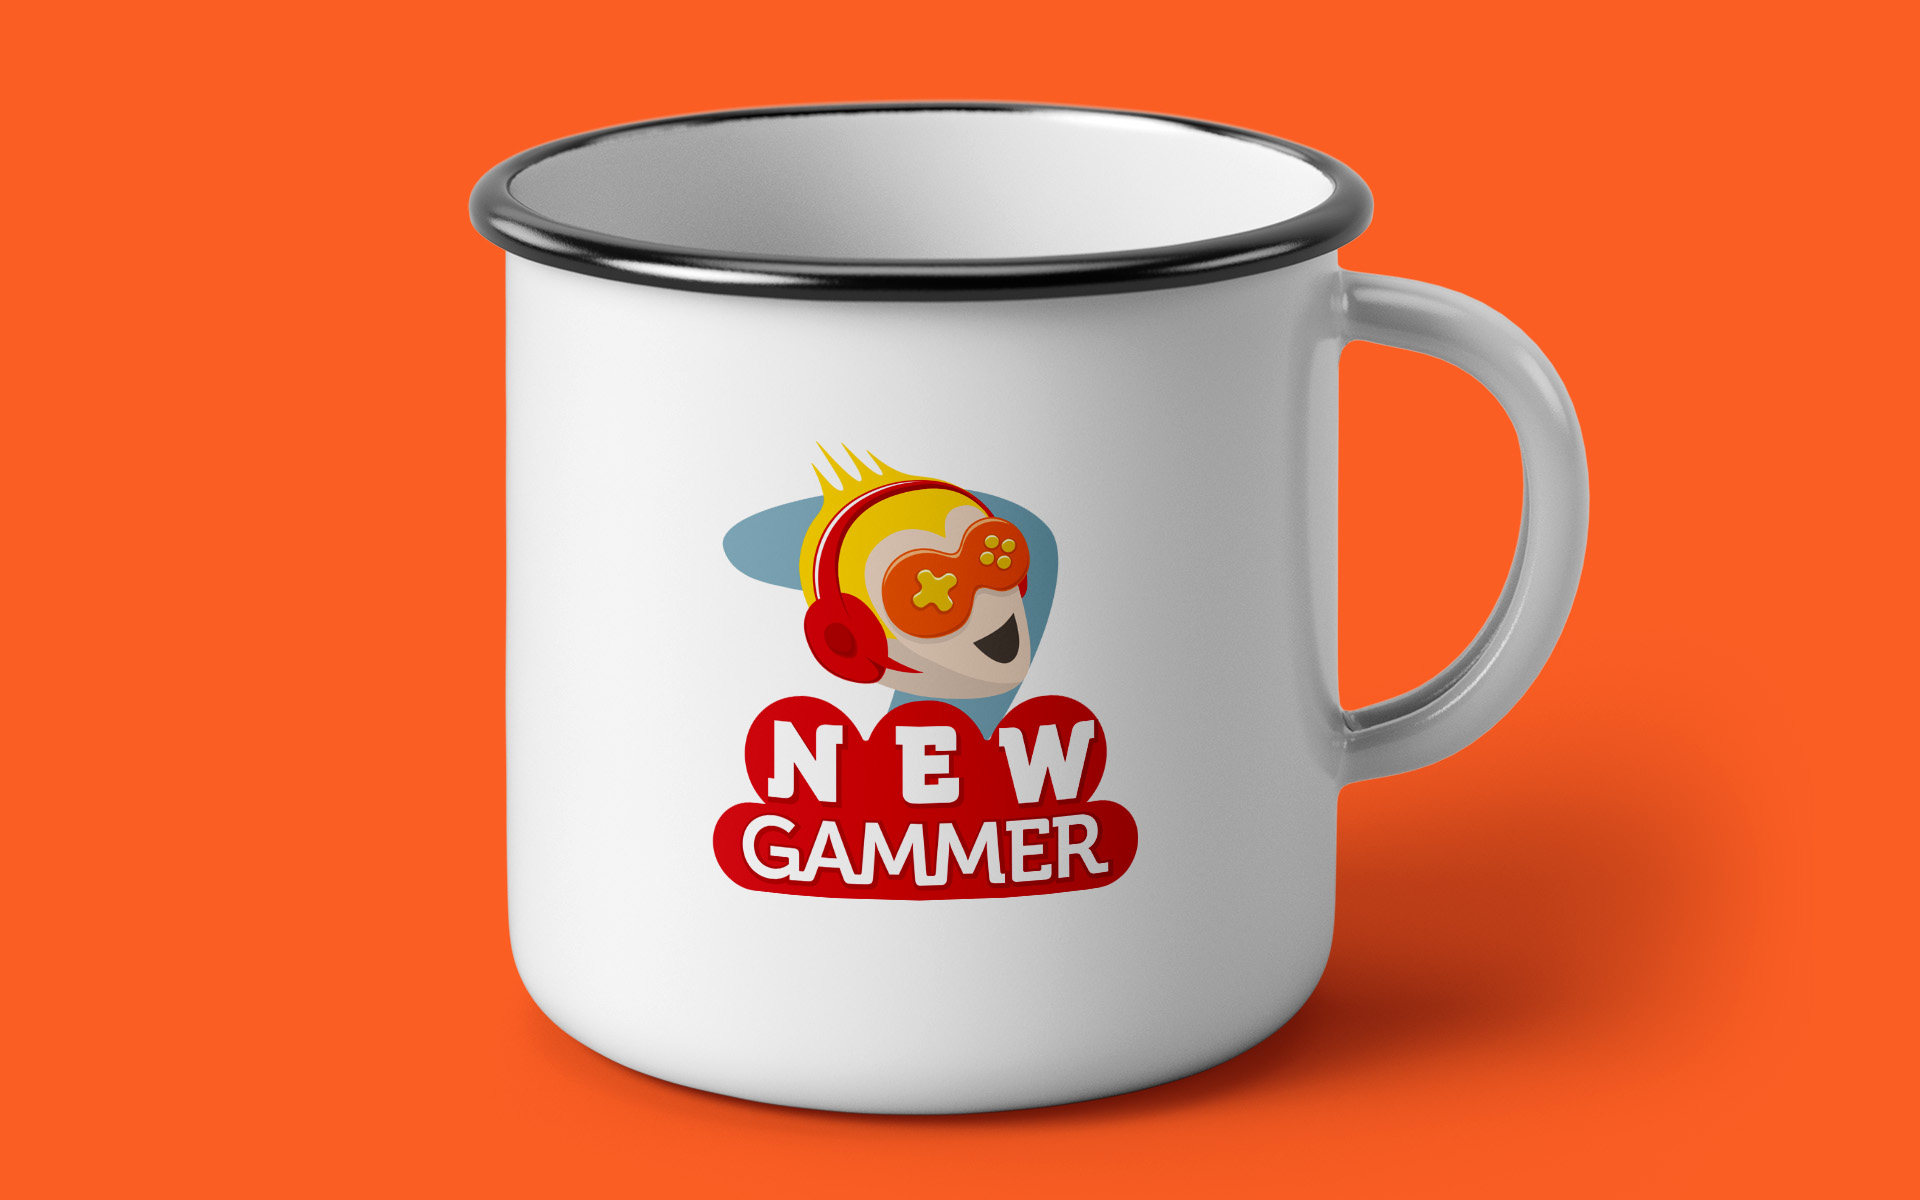 Imagem de caneca de ferro com logotipo NewGammer estampado.